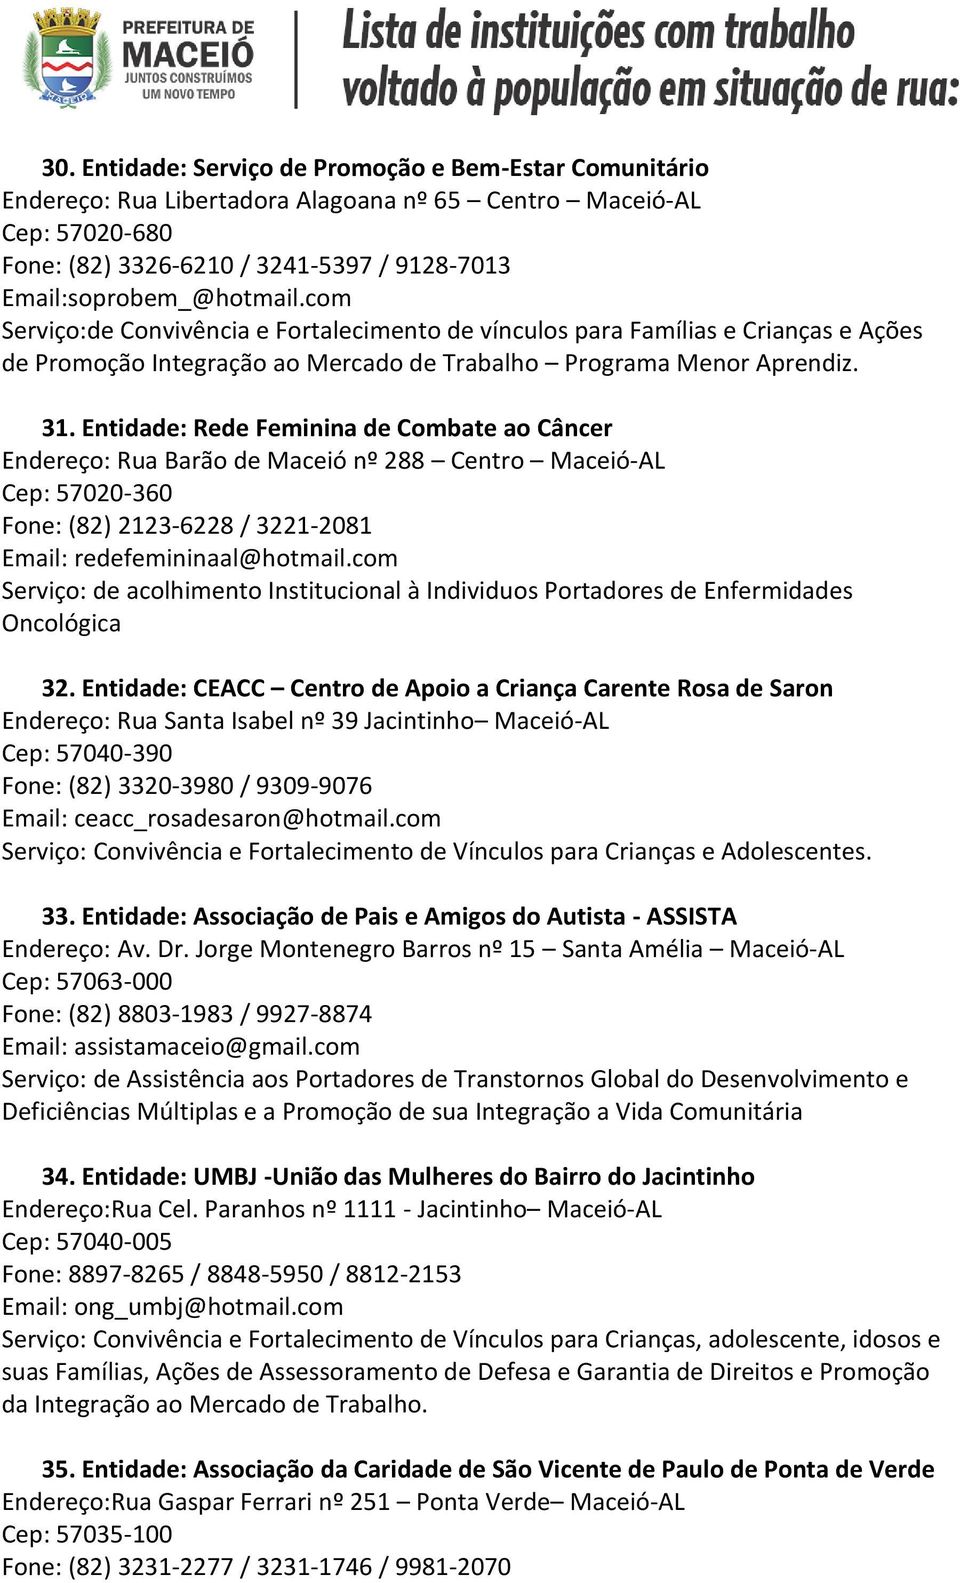 Entidade: Rede Feminina de Combate ao Câncer Endereço: Rua Barão de Maceió nº 288 Centro Maceió-AL Cep: 57020-360 Fone: (82) 2123-6228 / 3221-2081 Email: redefemininaal@hotmail.